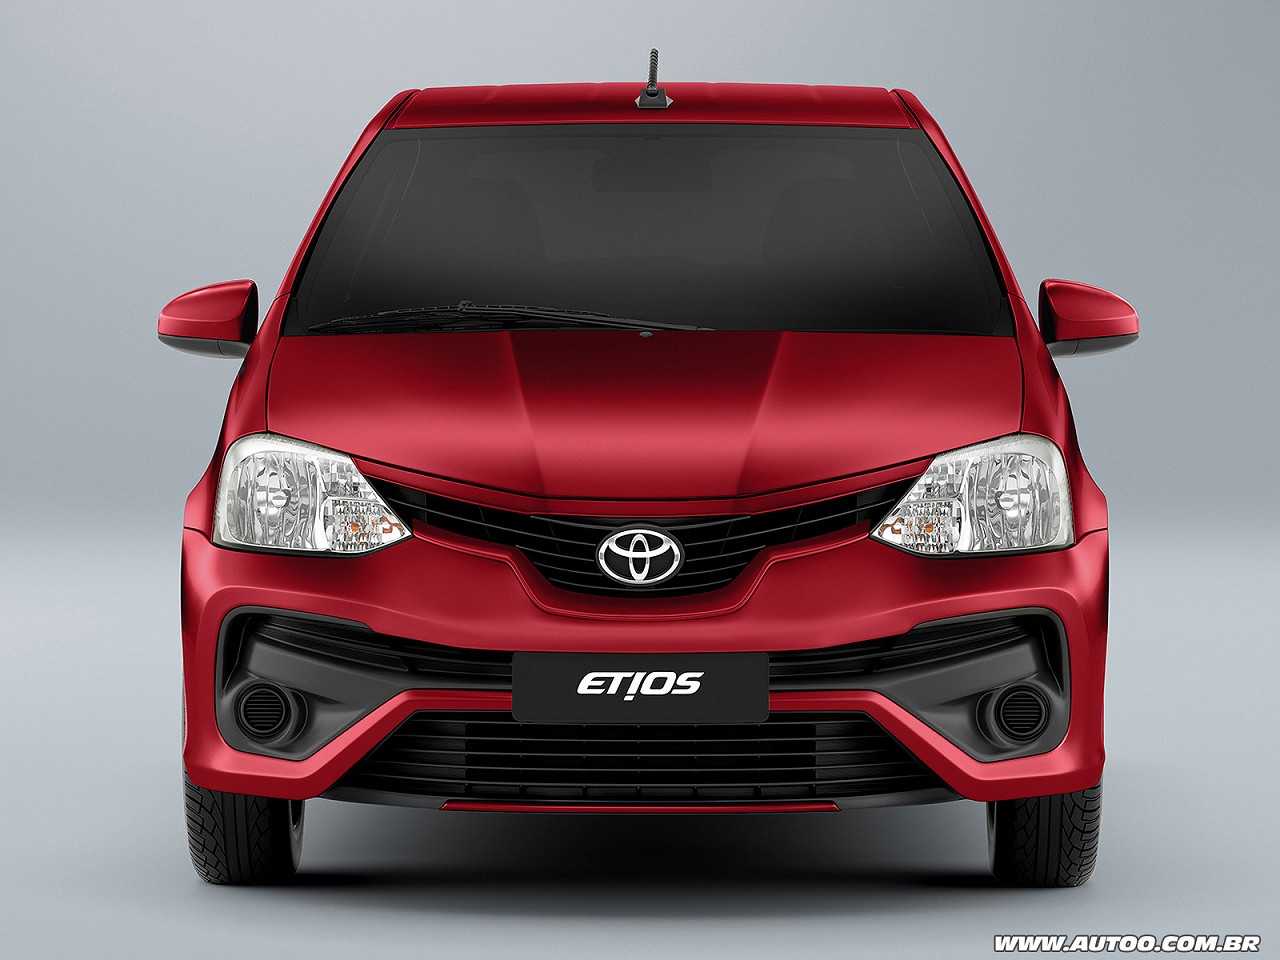 Devo optar por um Toyota Etios novo ou um Honda Fit seminovo?